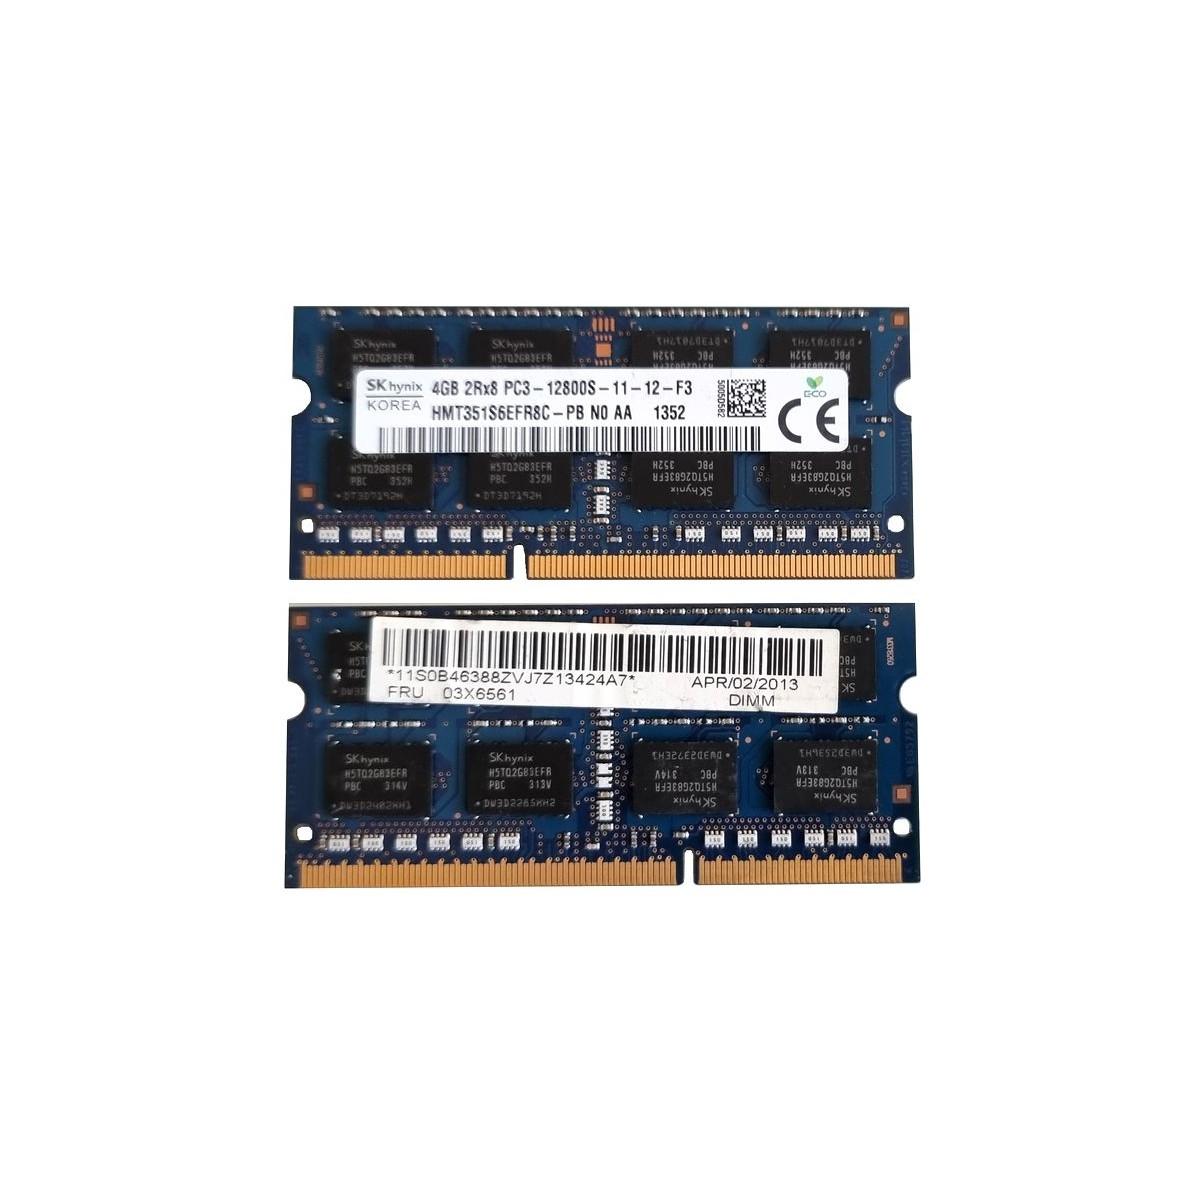 HYNIX 4GB SODIMM PC3 -12800S HMT351S6EFR8C-PB